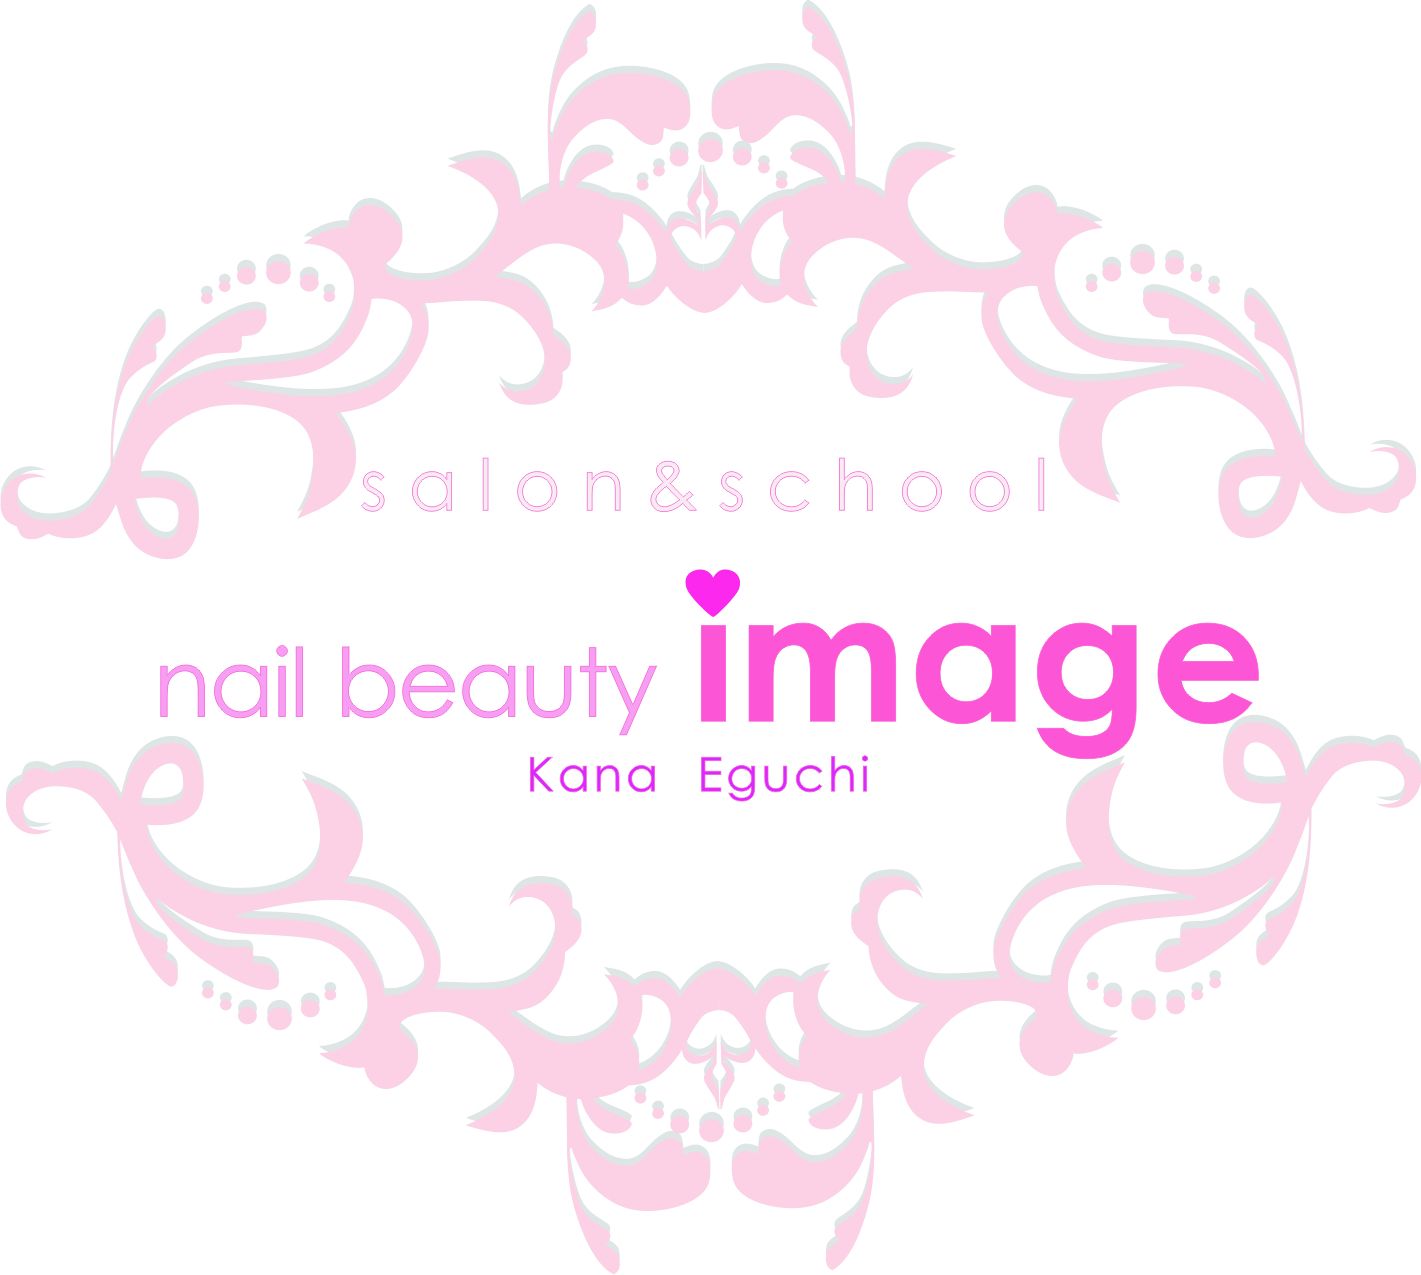 nail beauty image